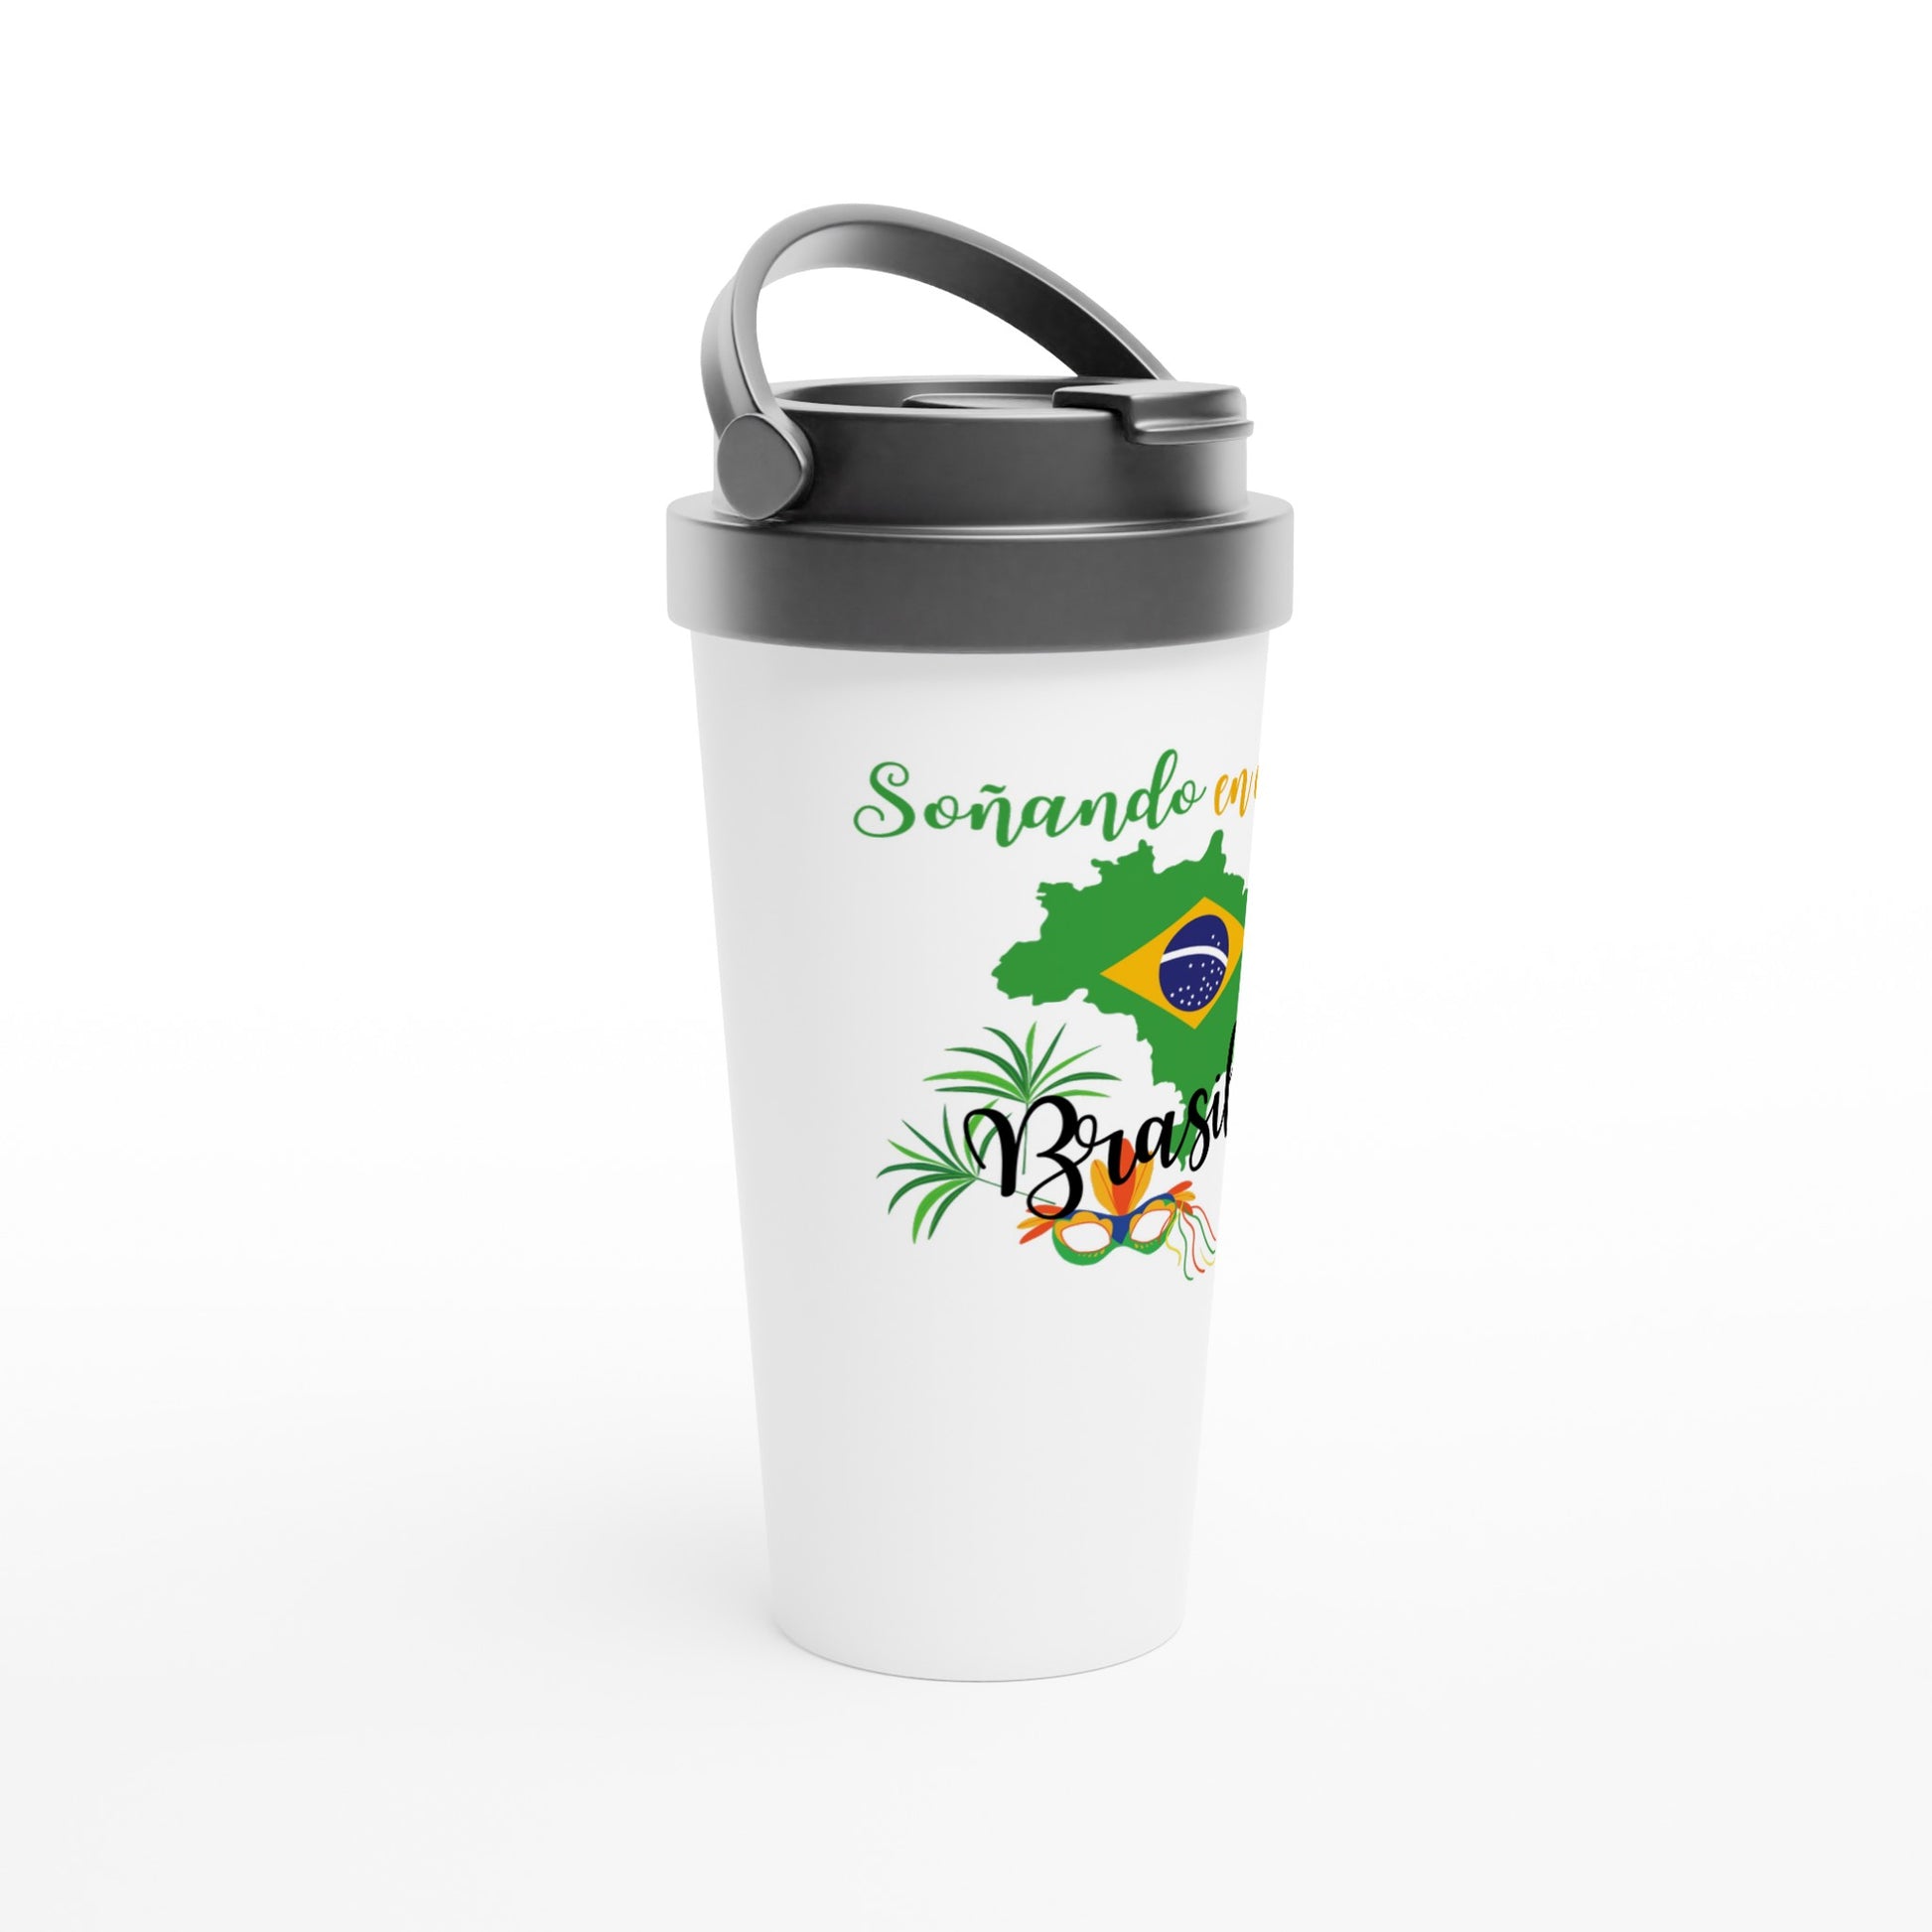 Taza de acero para conservar el café diseño brasil